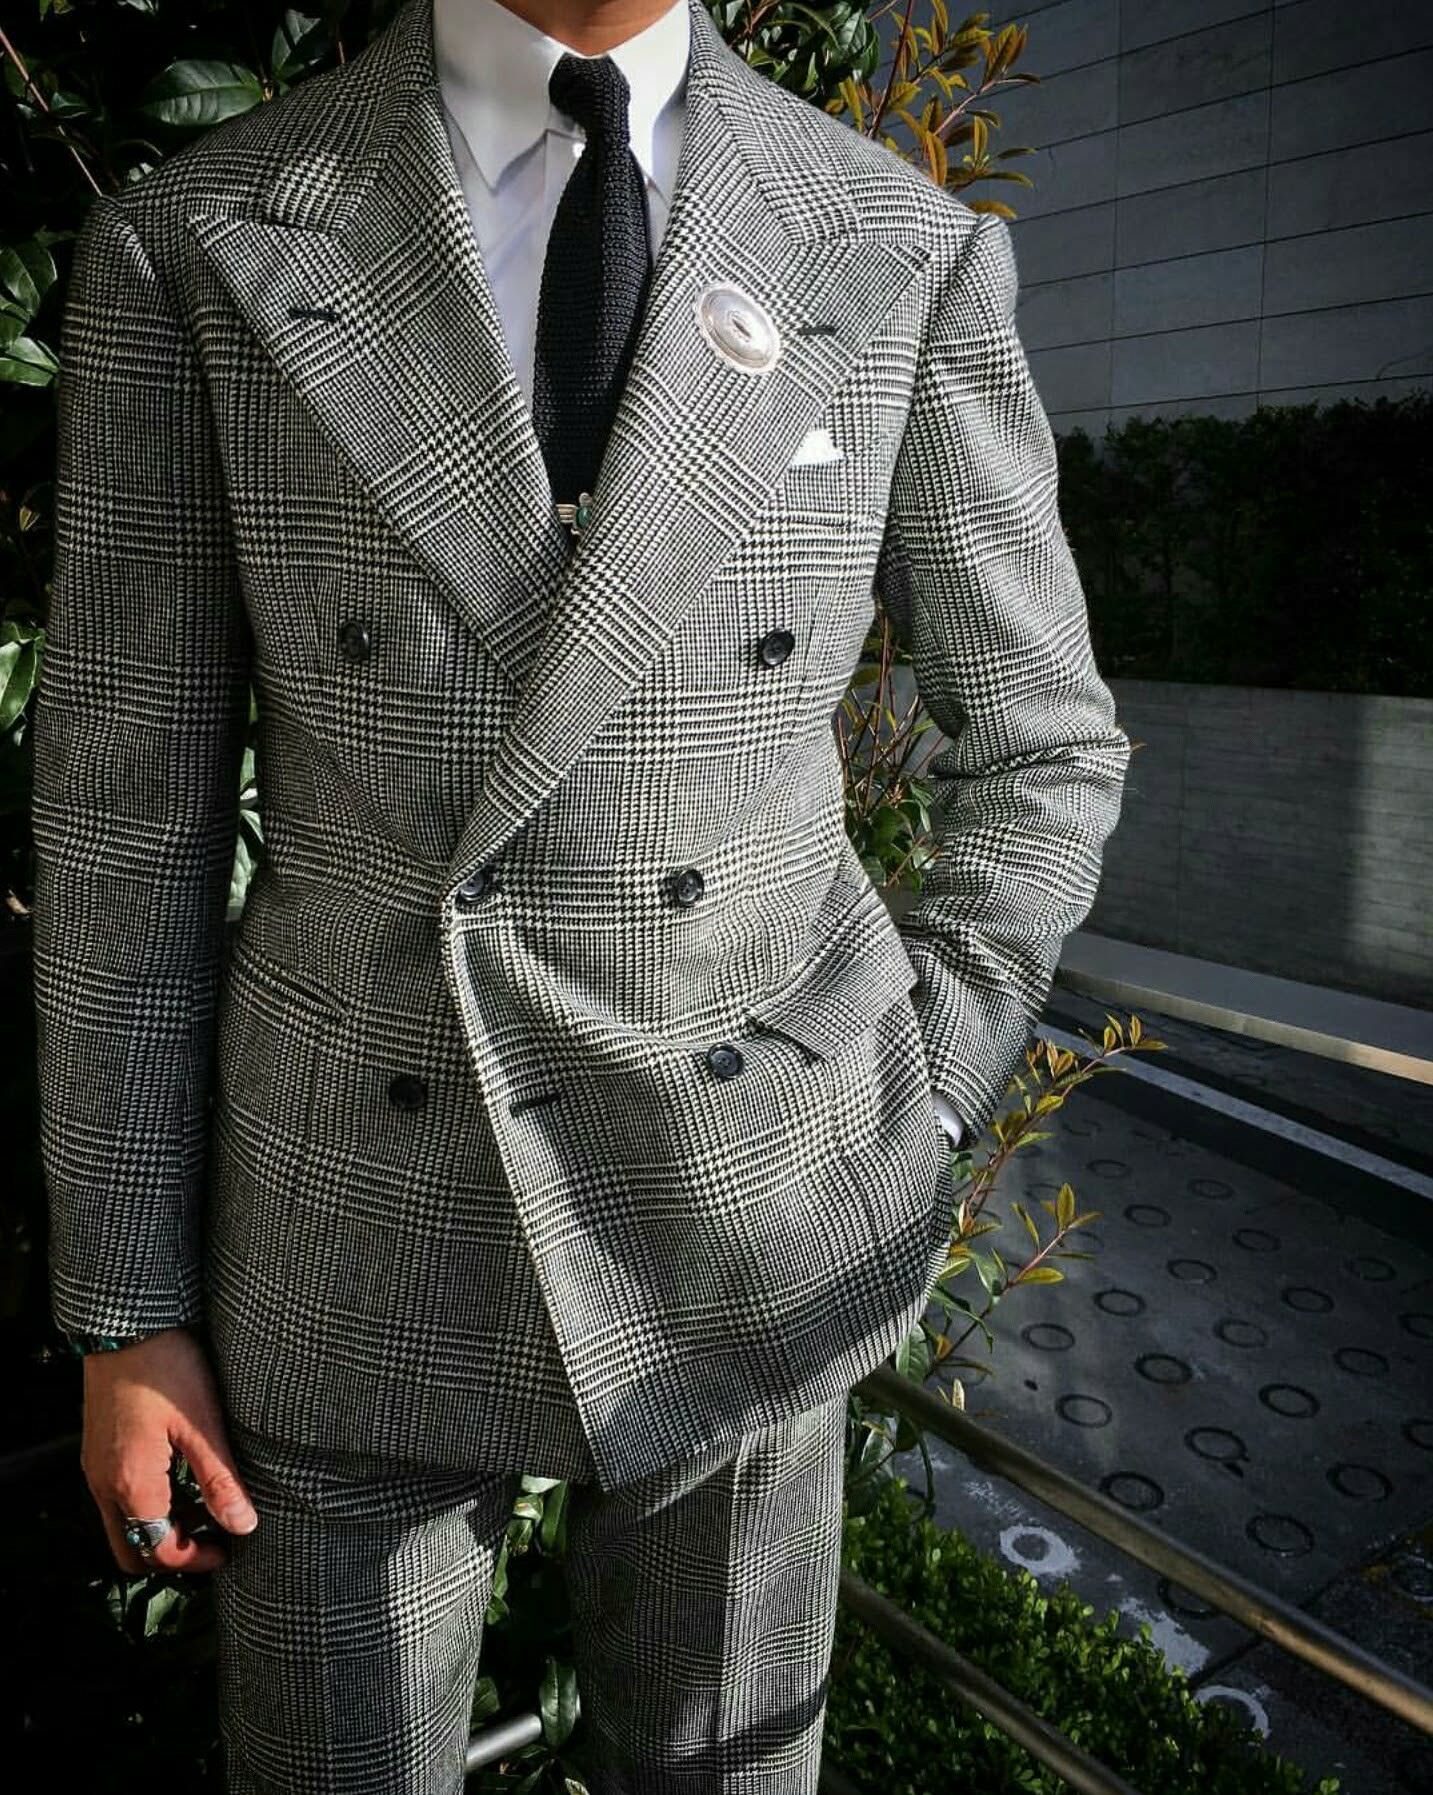 Glen plaid suit